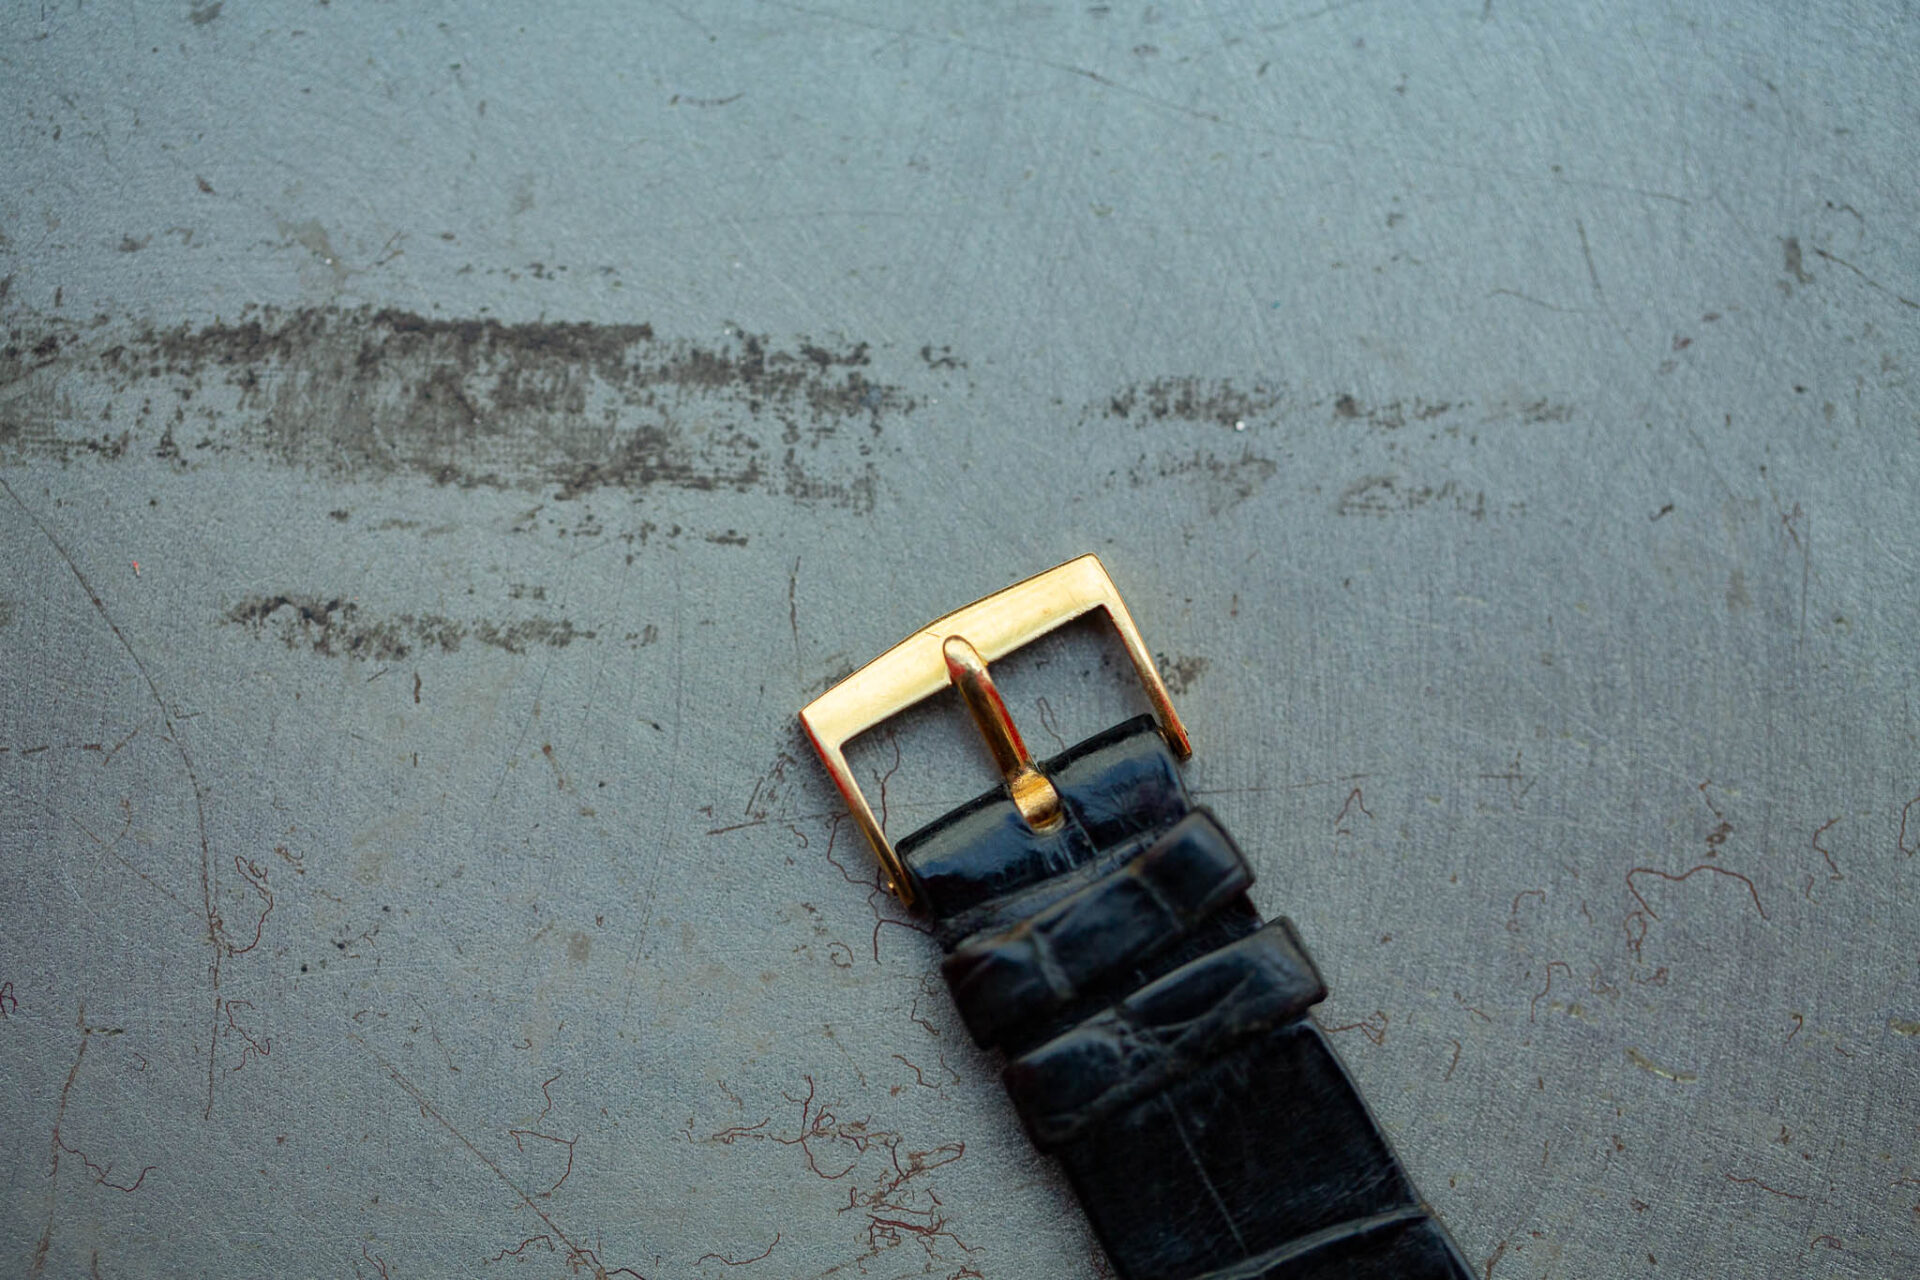 Audemars Piguet - Alexandre Landre - Sélection de montres de la vente Horlogerie rue de Bourgogne #11